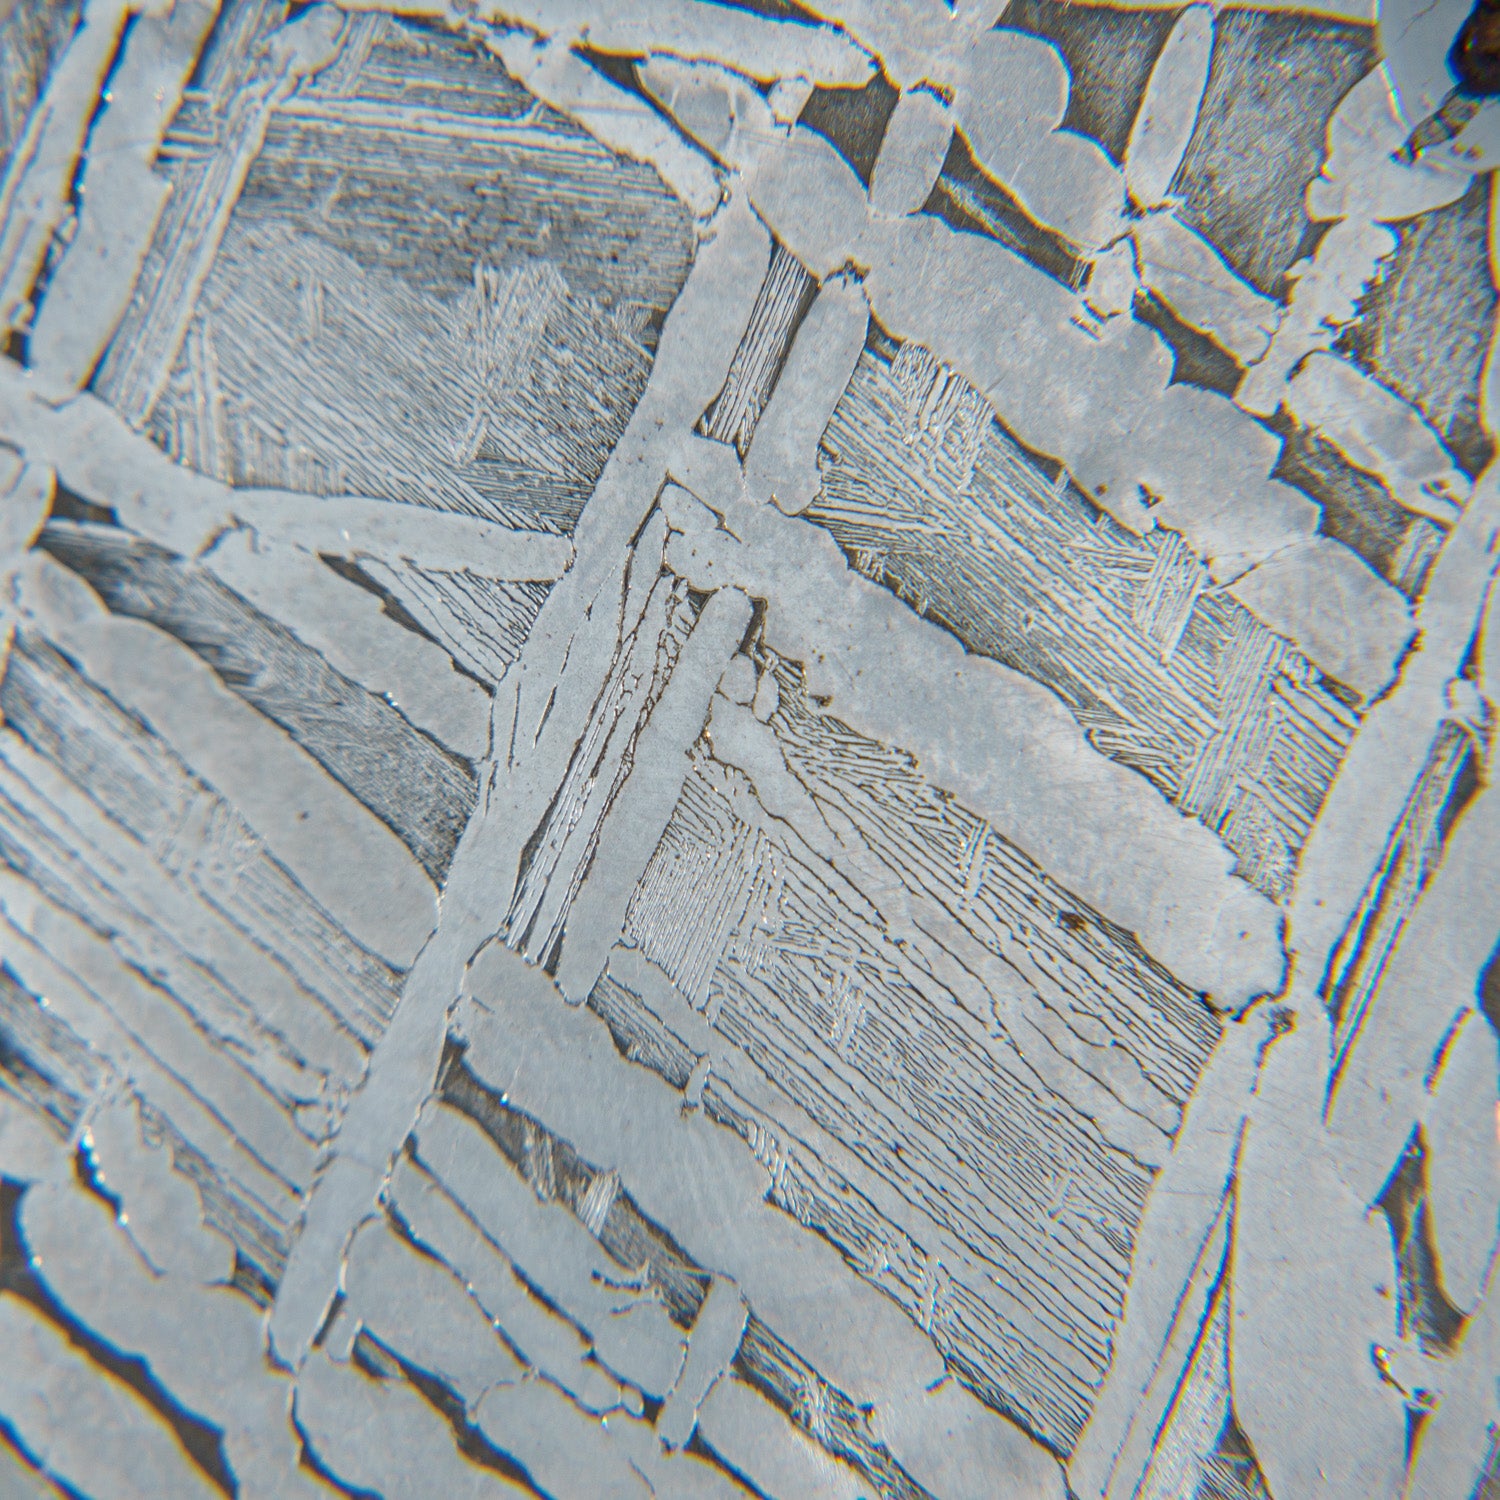 Genuine Muonionalusta Meteorite Slice (95.7 grams)